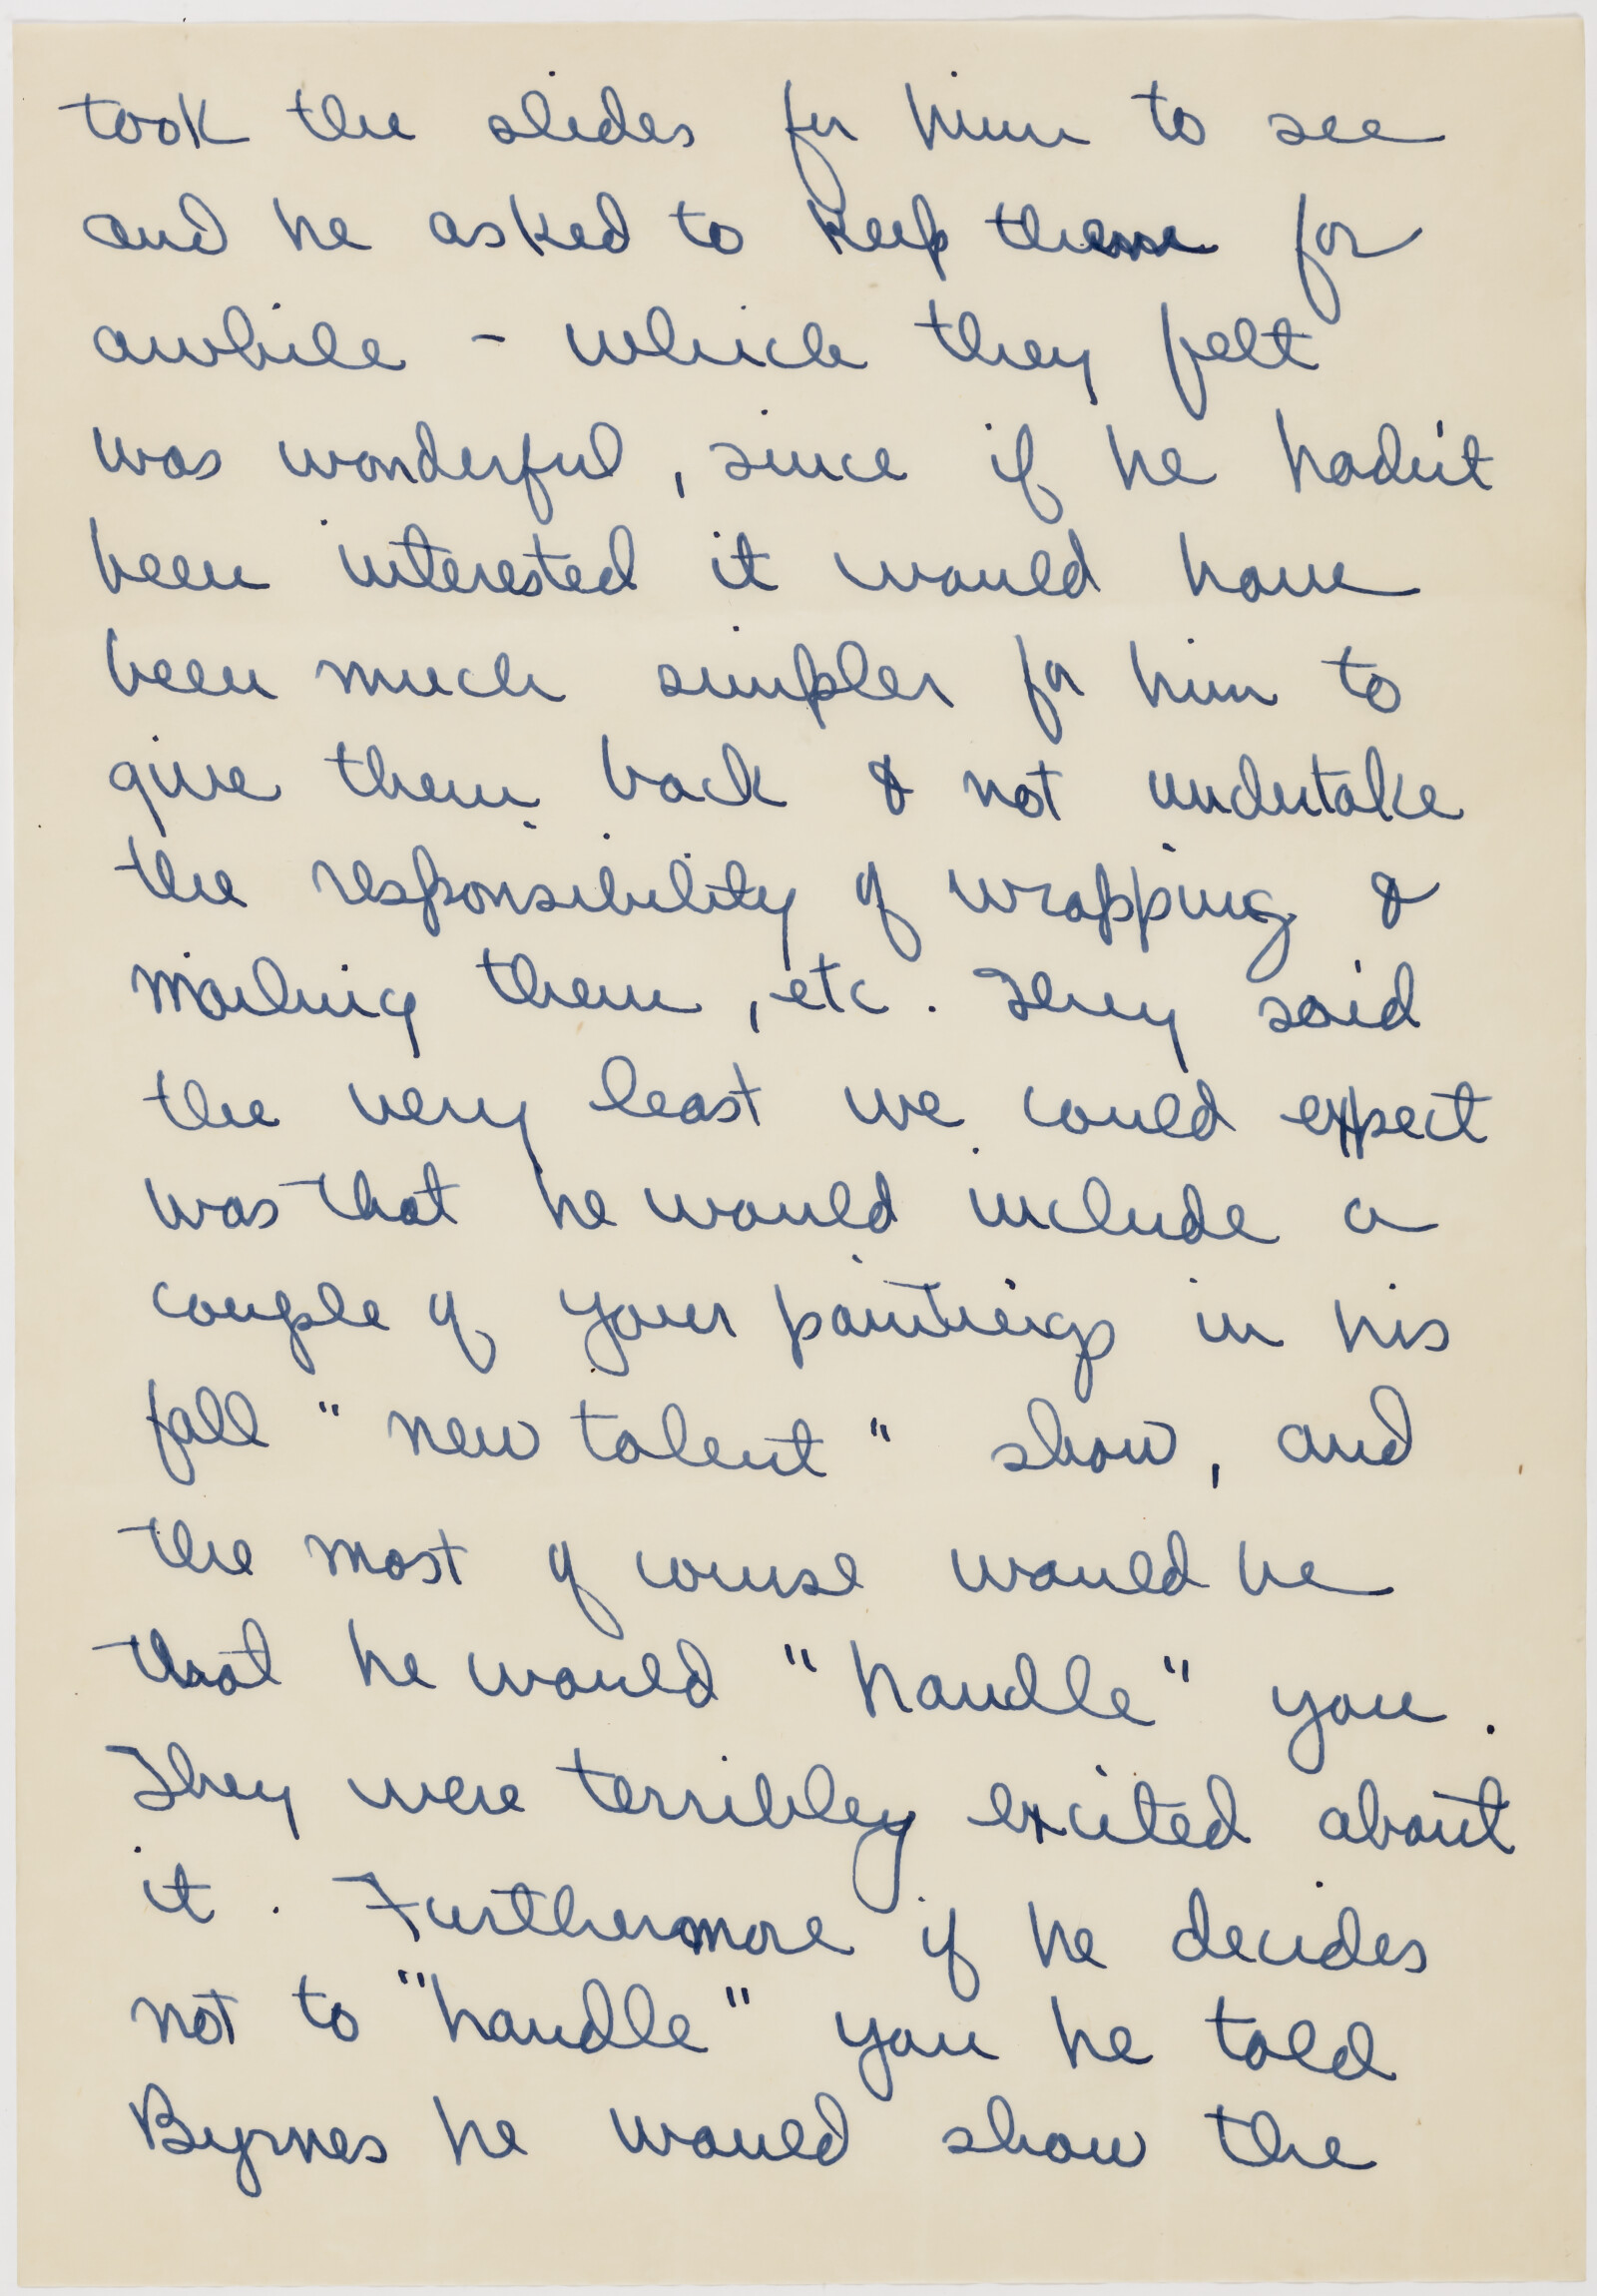 Correspondence from Phyllis Diebenkorn to Richard Diebenkorn